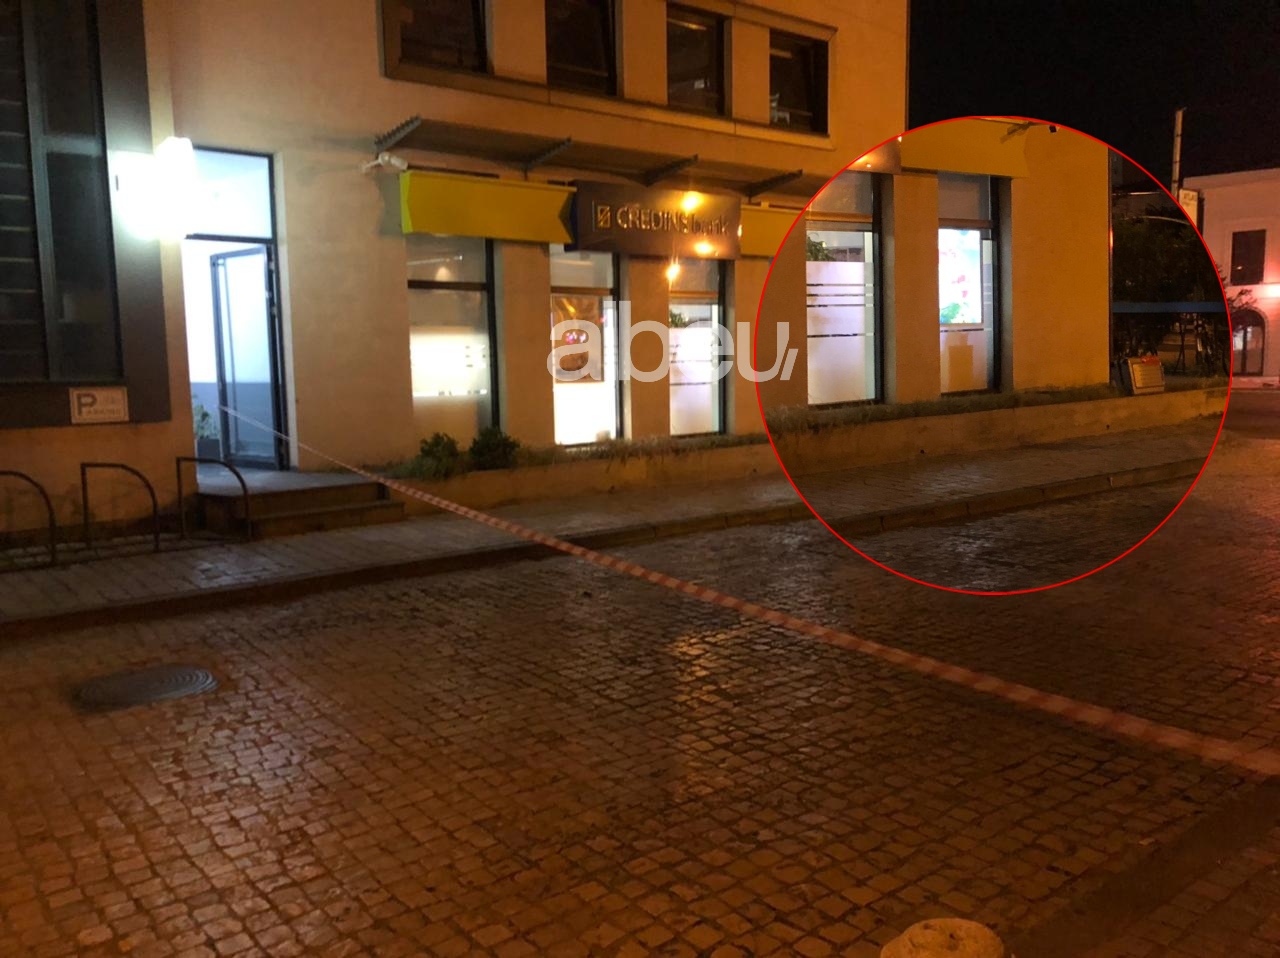 Alarm për bombë pranë një banke në Shkodër, policia rrethon zonën (VIDEO)